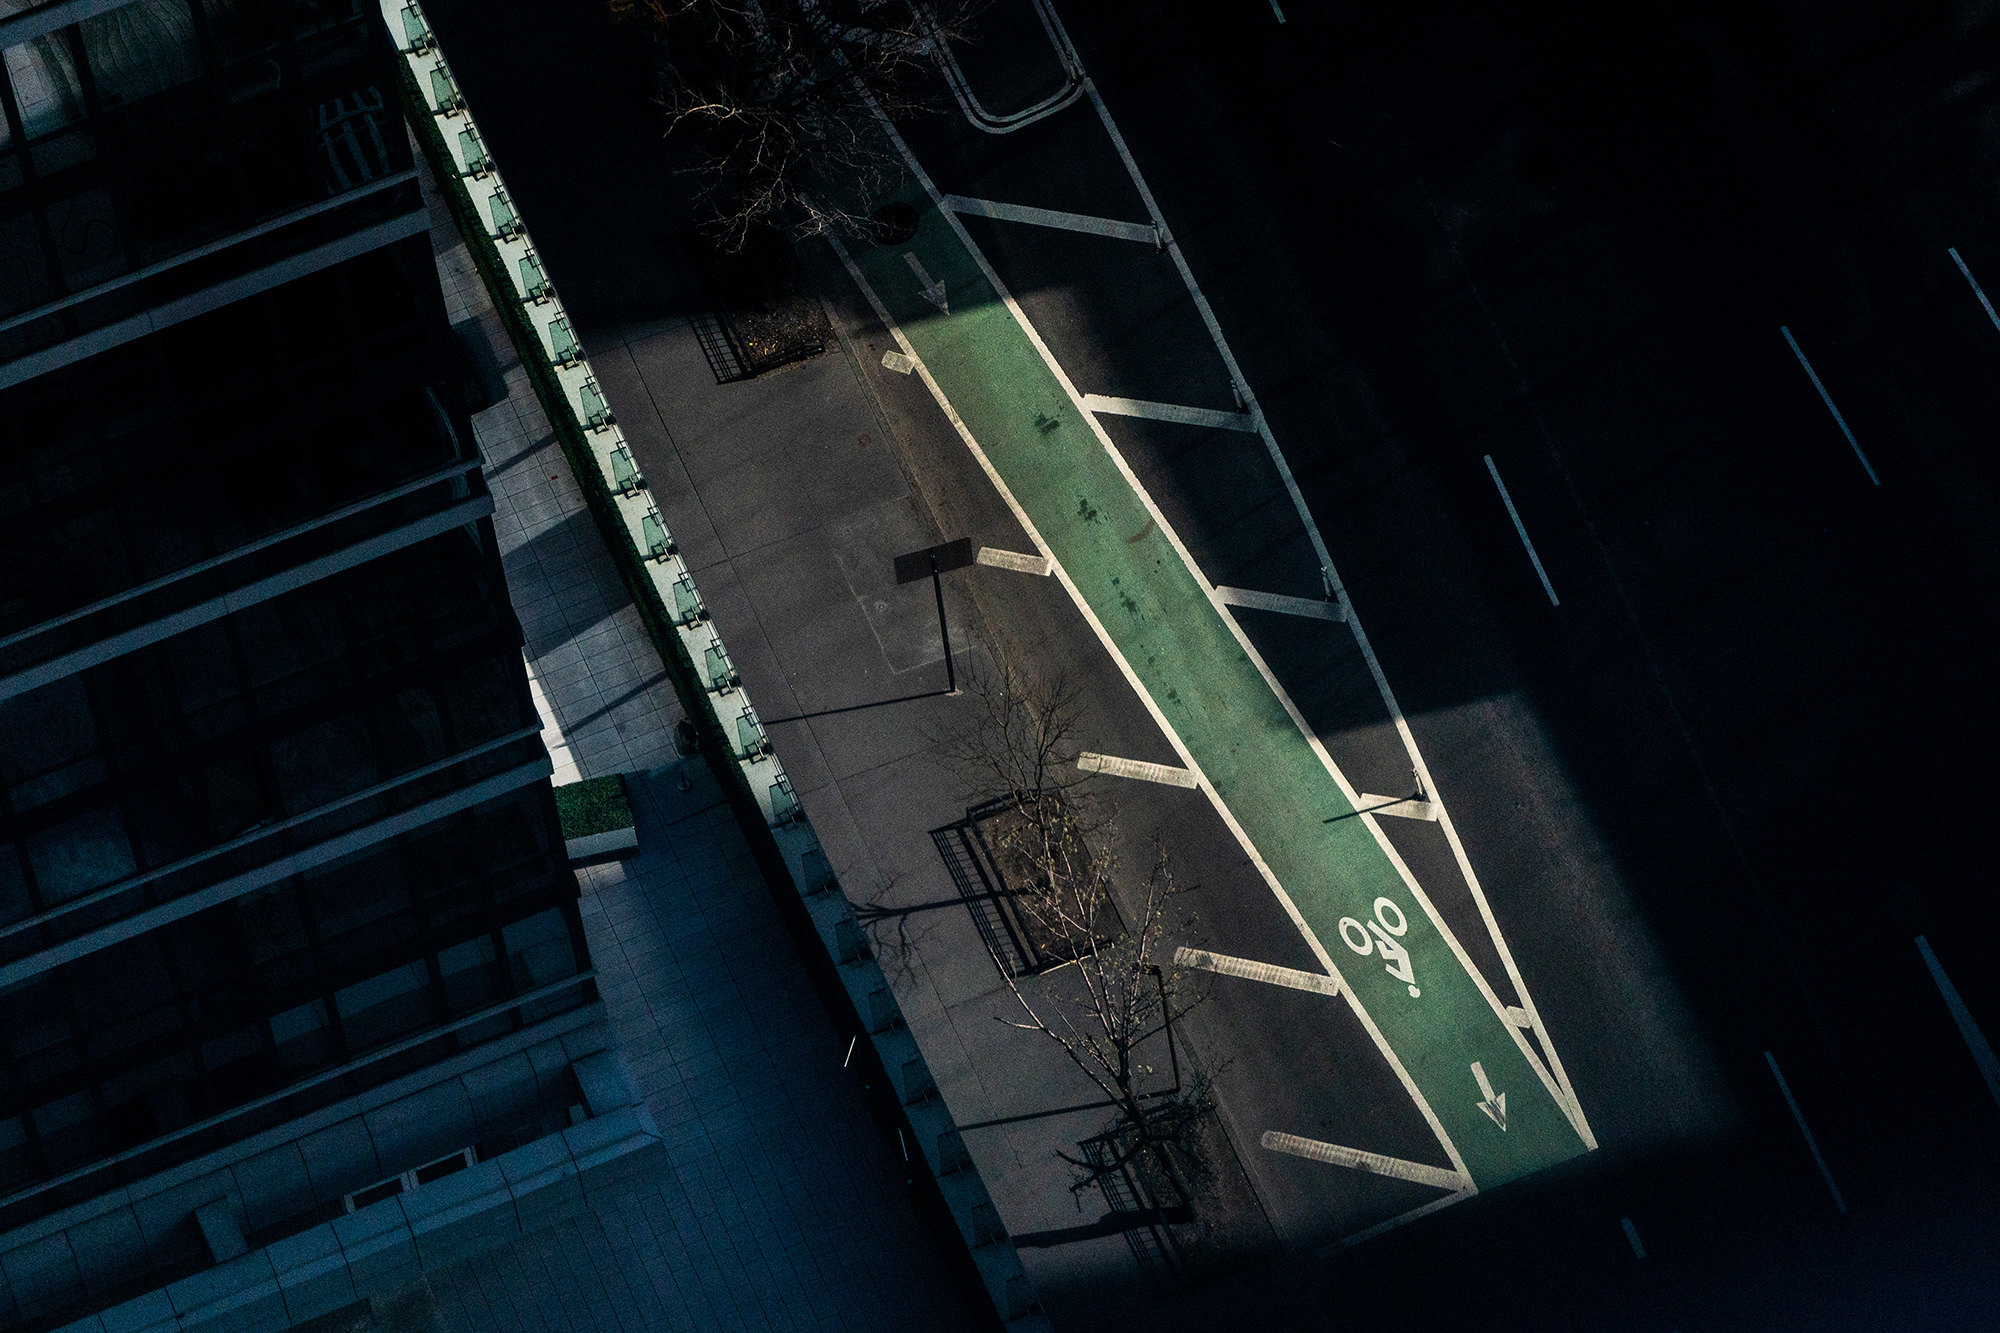 Жутковатые снимки обезлюдевшего Нью-Йорка на Манхэттене, 15 марта, Пустая, улица, в районе, карантина, Футуристическая, смотровая, площадка, Vessel, ВестСайд, парковка, магазин, Закрывшийся, переполнен, автомобильная, открытая, закрытый, и ночью, Пустой